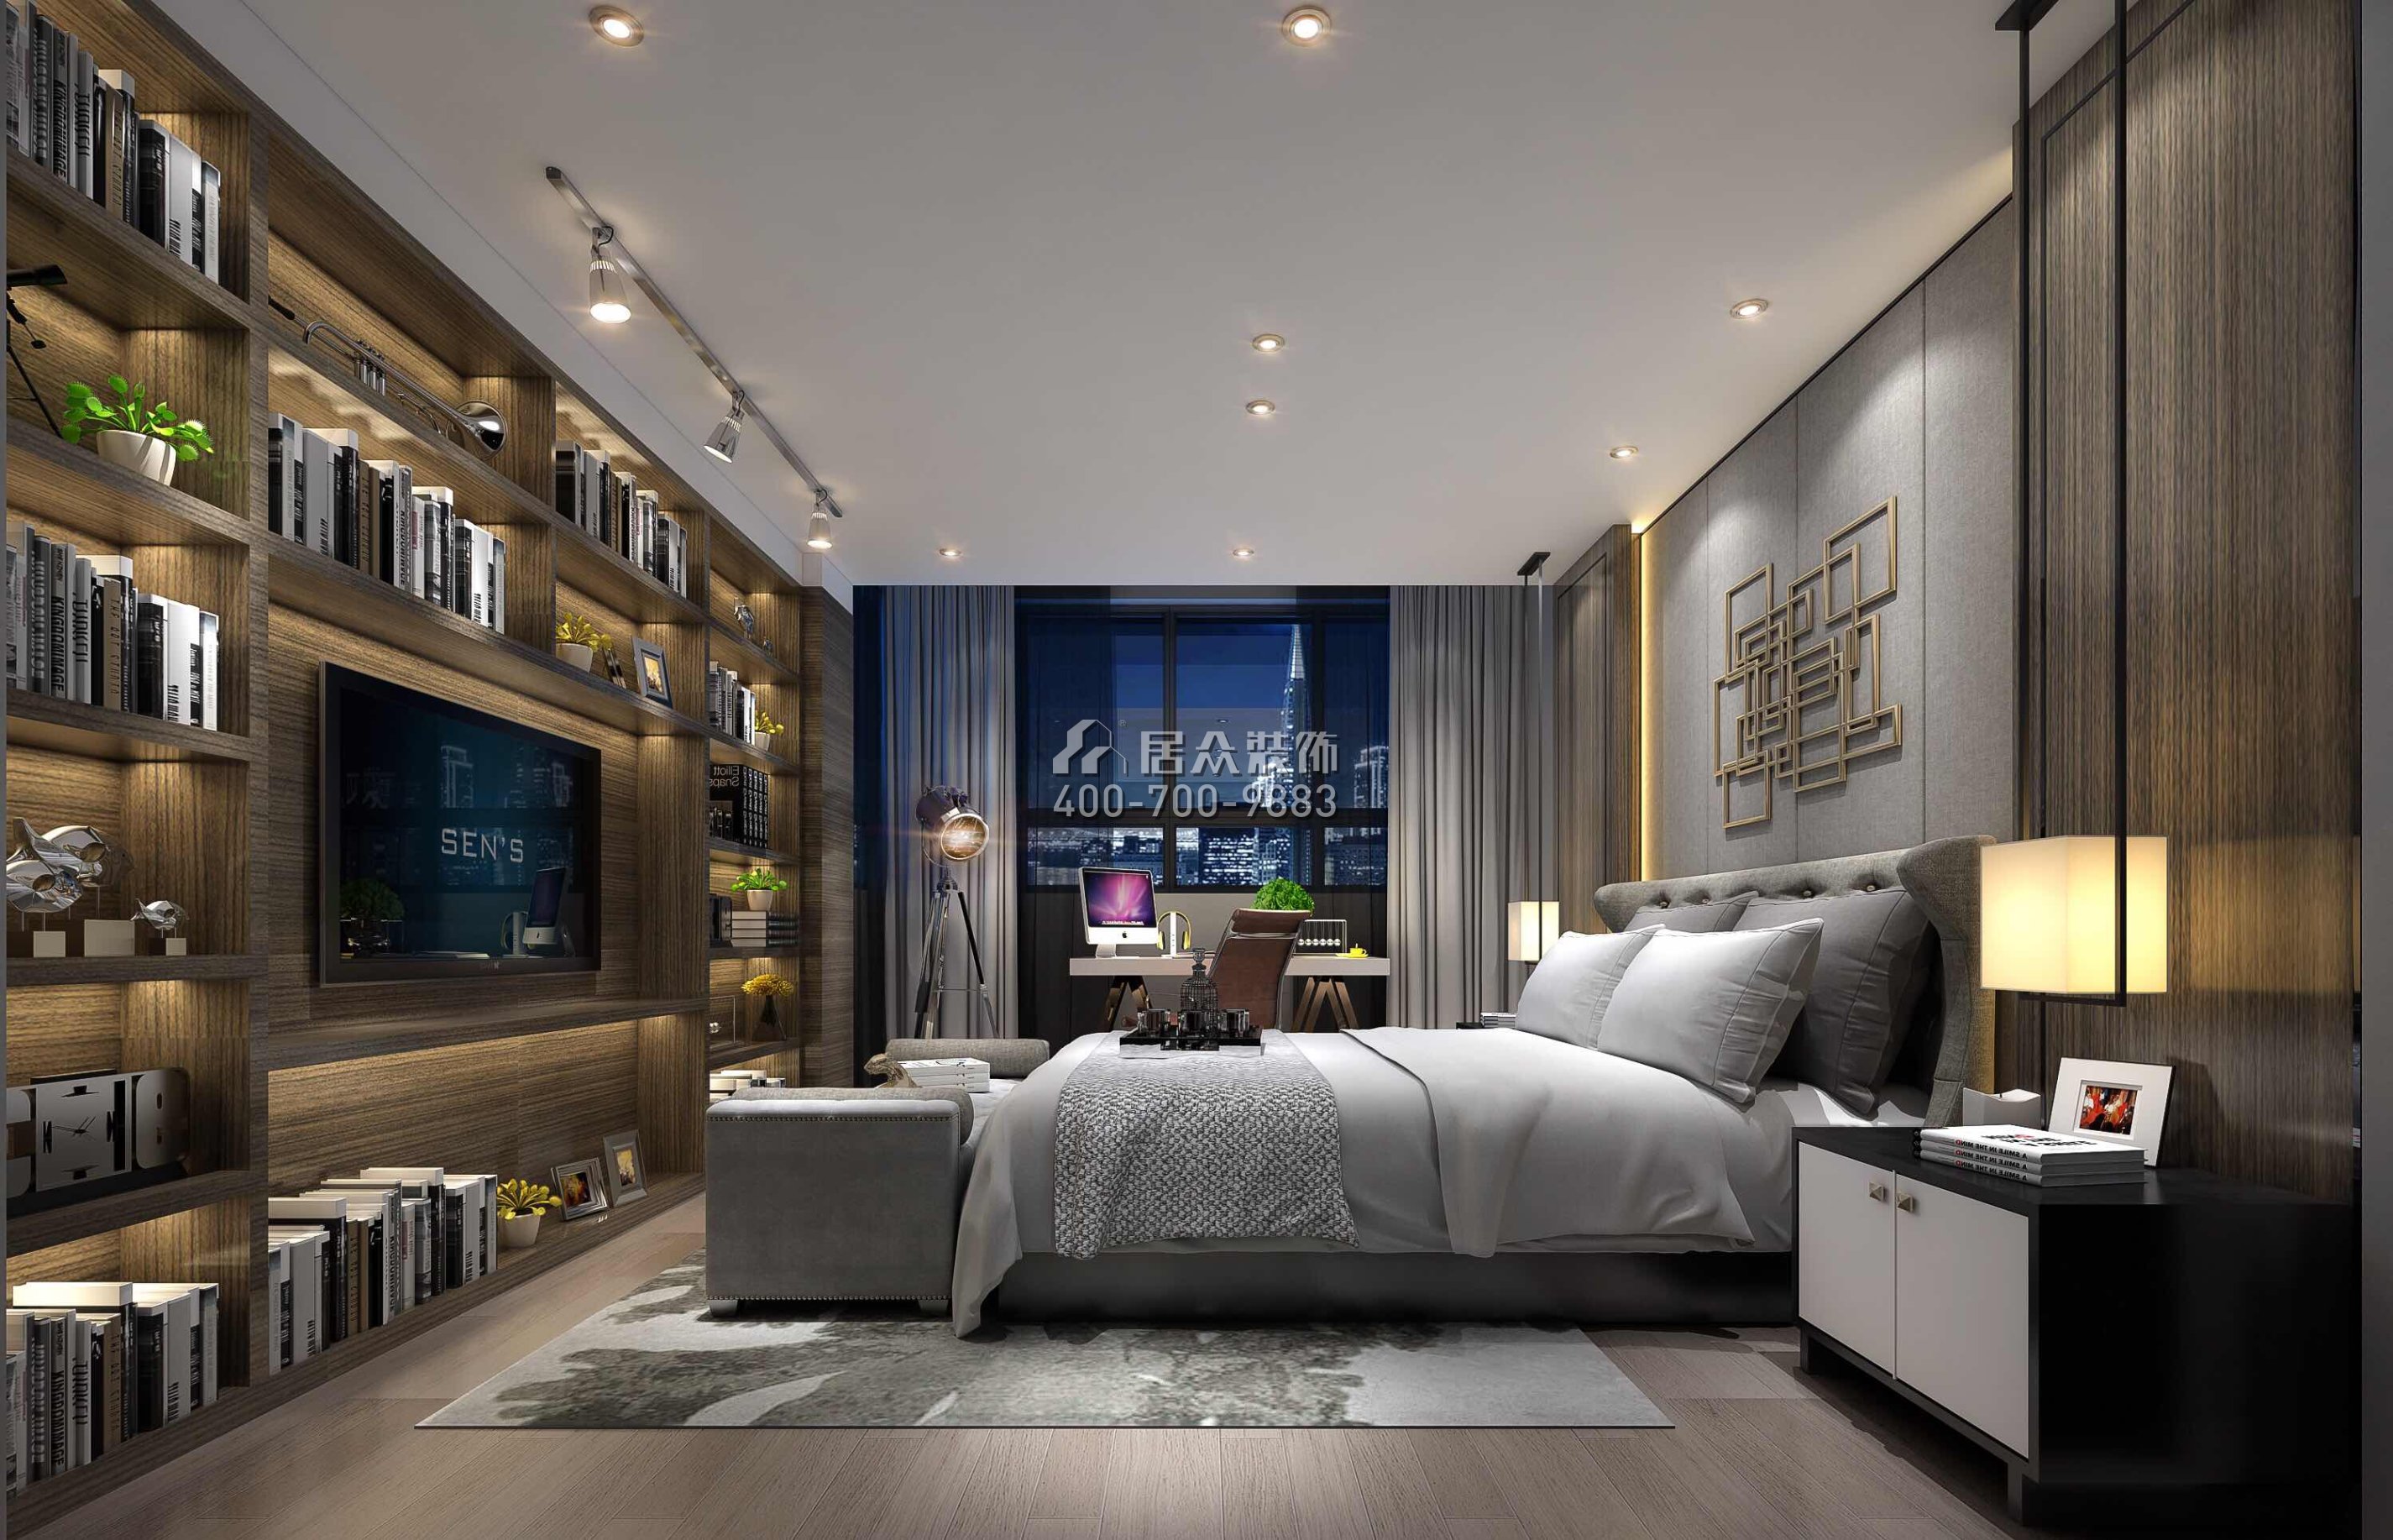 招商名仕220平方米现代简约风格复式户型卧室装修效果图